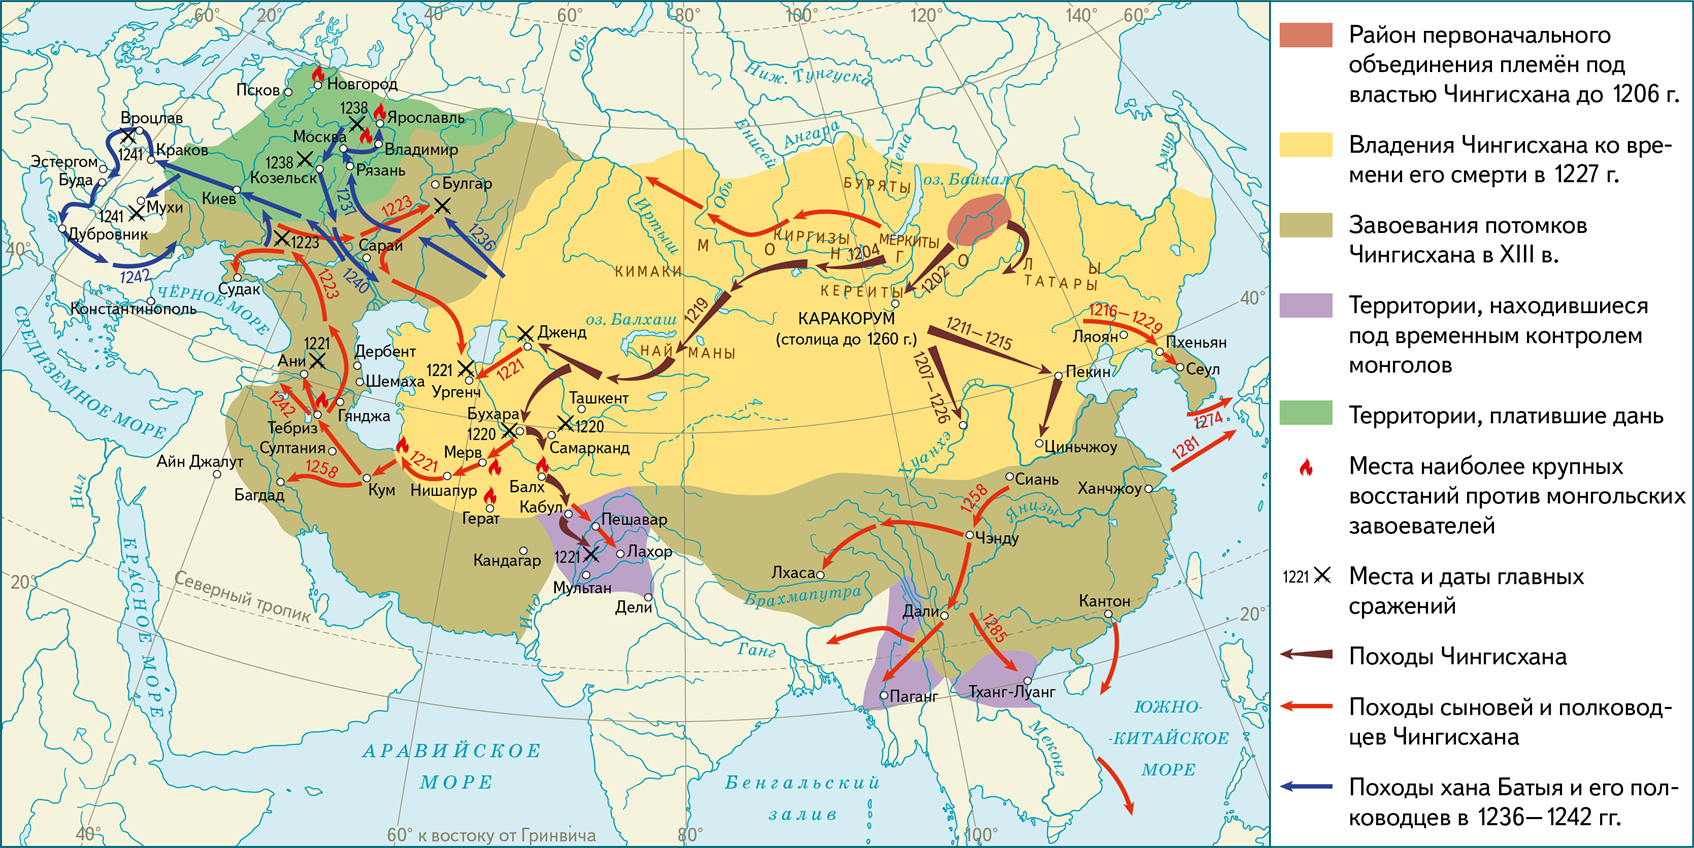 Завоевательные походы Чингисхана карта. Монгольская Империя 12 век. Монгольская Империя Чингисхана карта. Монгольские завоевания Чингисхана на карте.